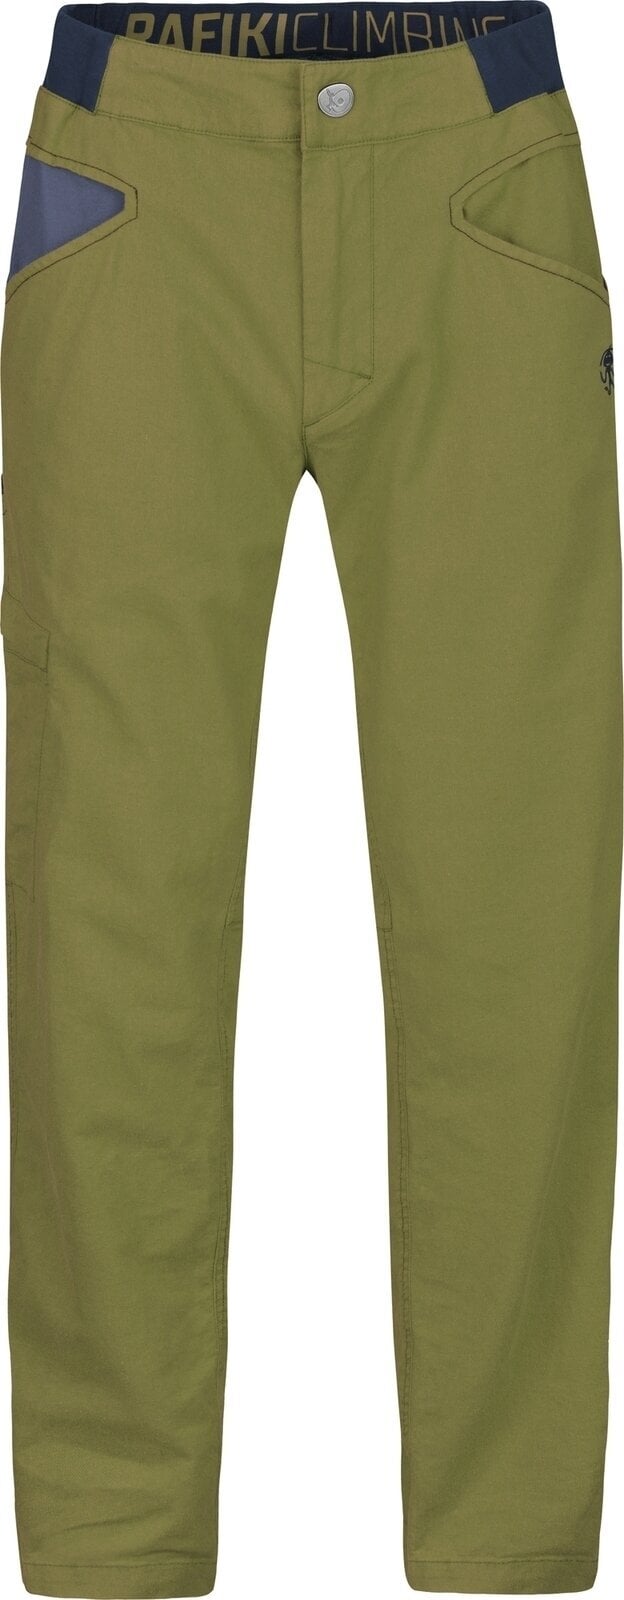 Spodnie outdoorowe Rafiki Grip Man Pants Avocado XL Spodnie outdoorowe